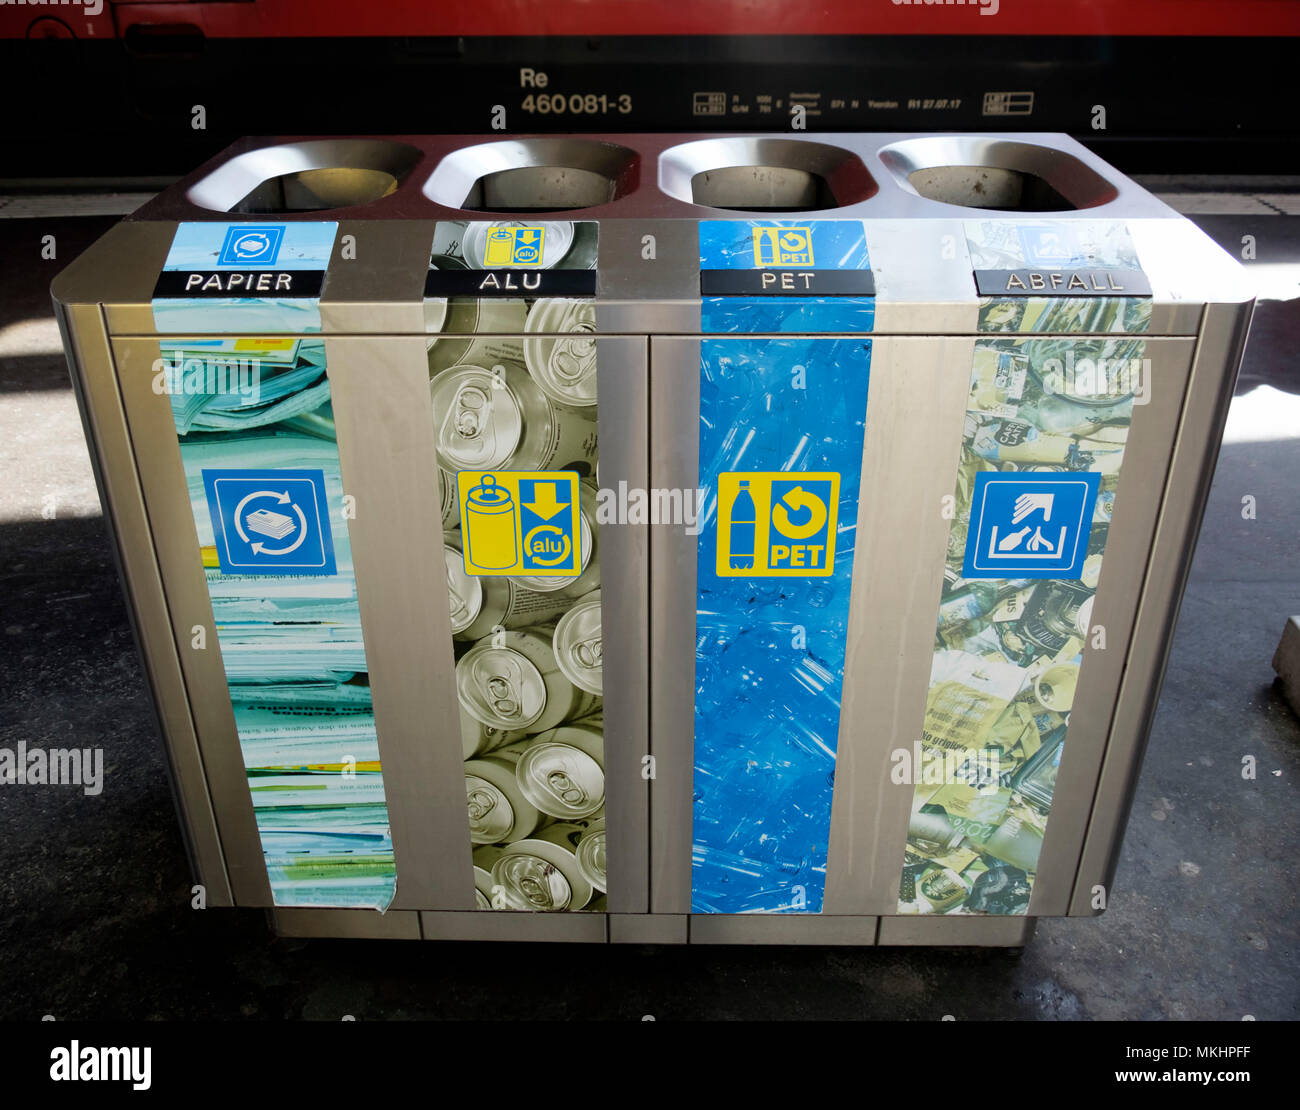 Reihe von Recycling Bins in Luzern, Schweiz, Europa Stockfotografie - Alamy